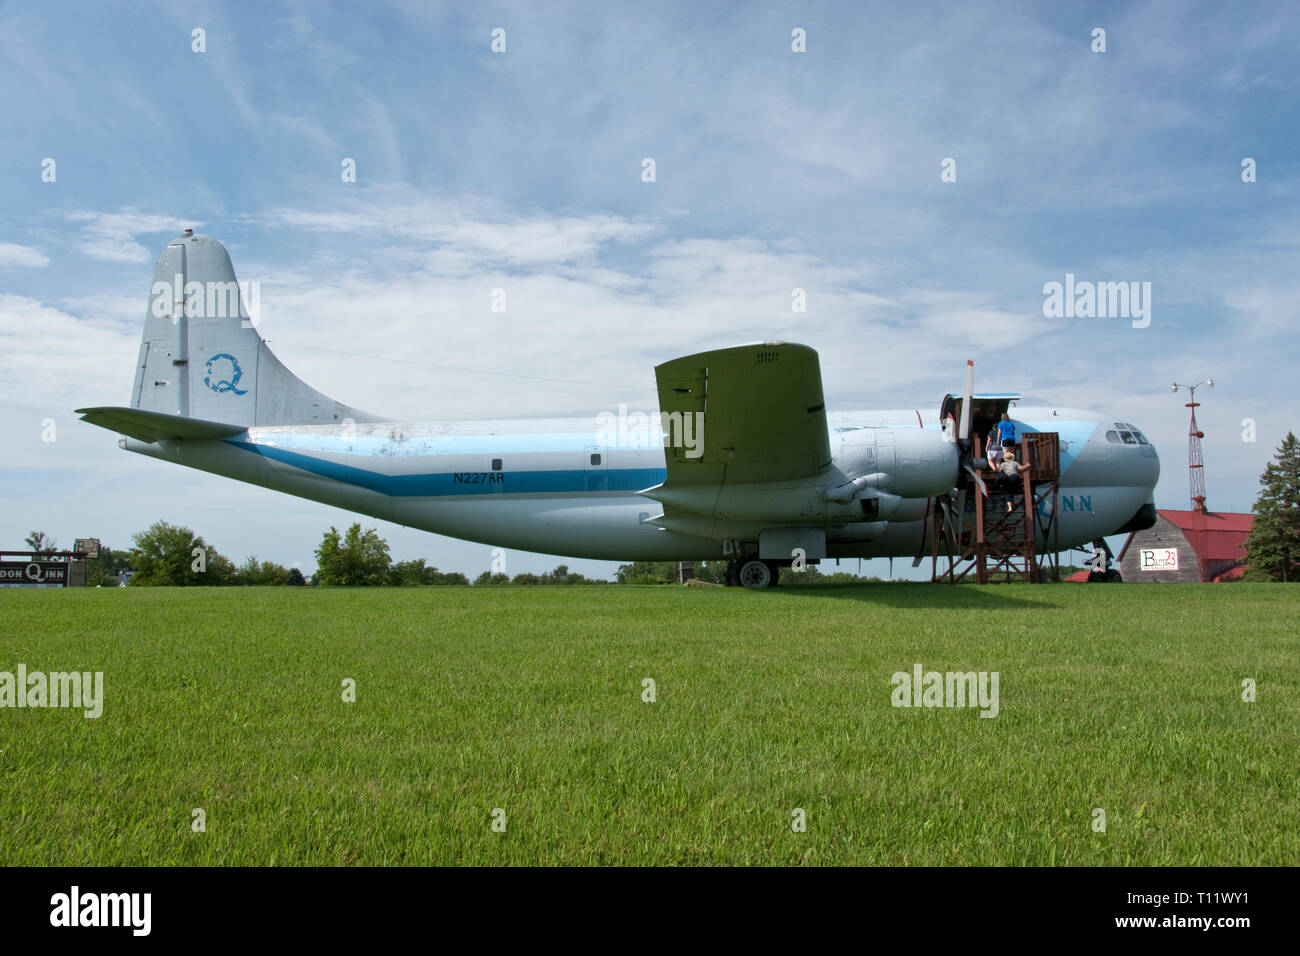 Un Boeing C-97 Stratofreighter avion cargo s'est posé à l'extérieur du Boarders Inn comme une attraction touristique près de Mequon, Wisconsin. Banque D'Images